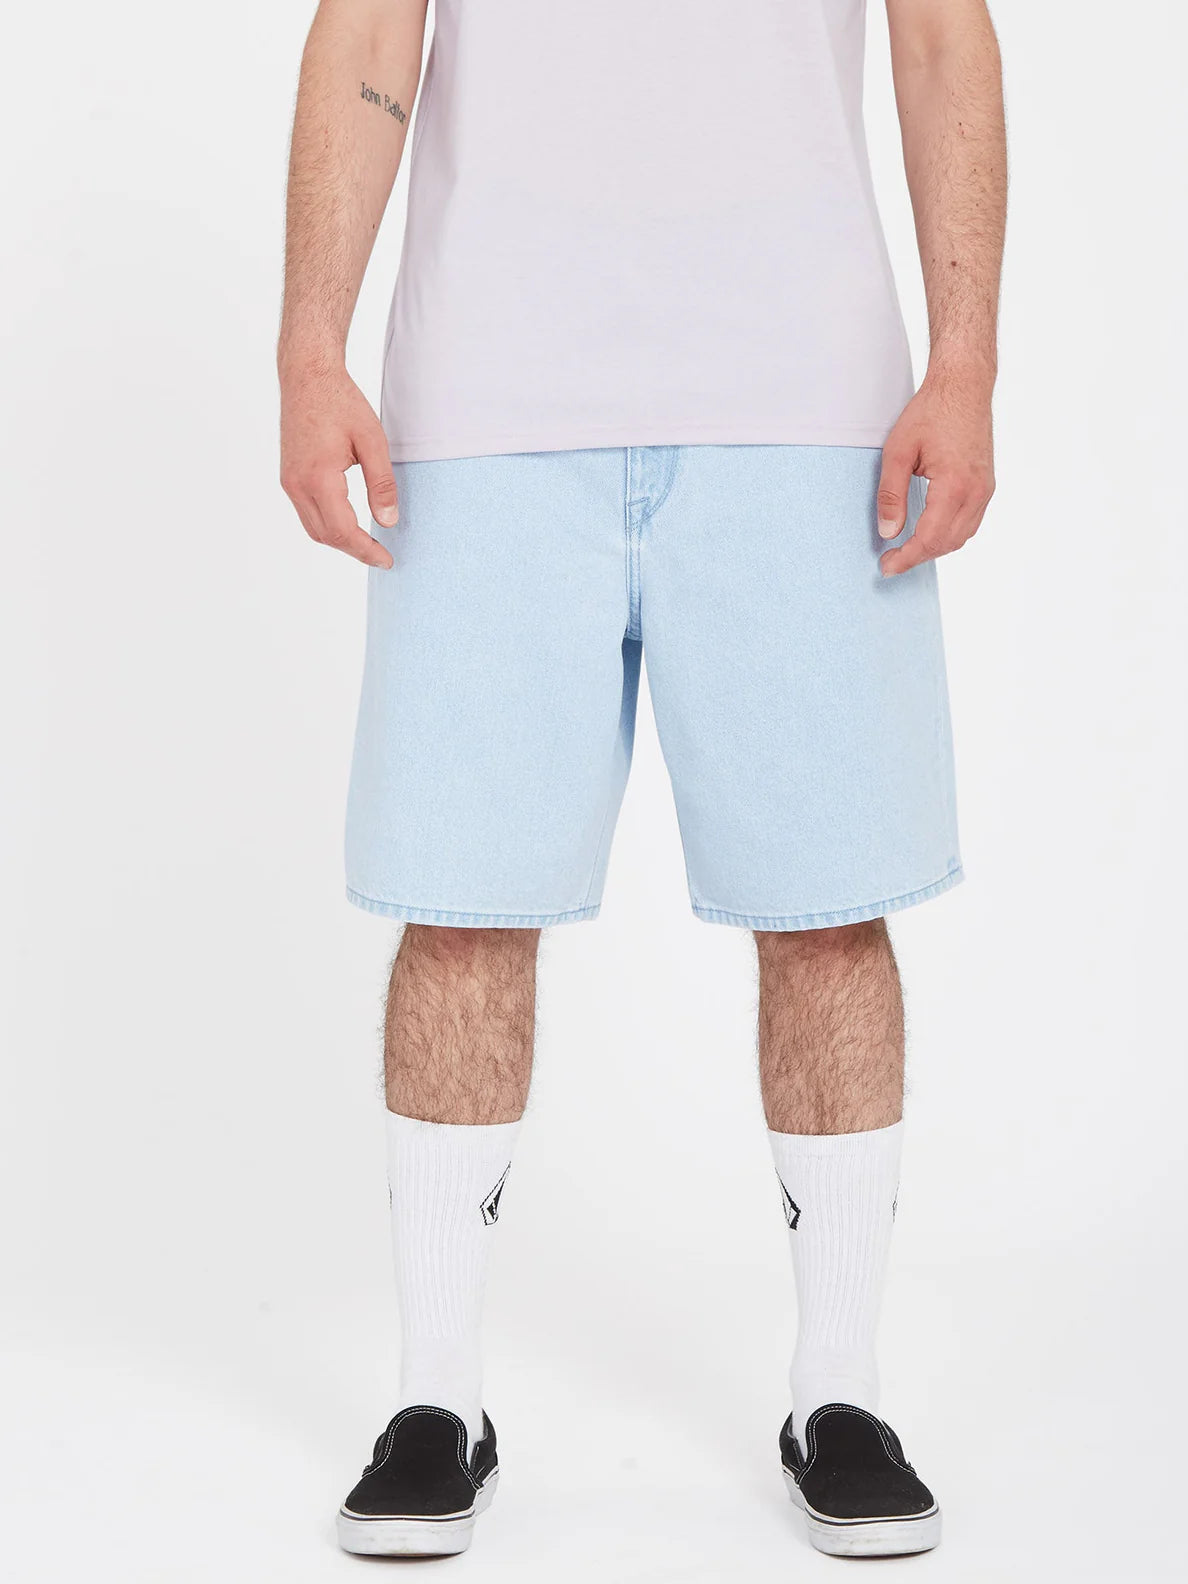 Pantalón Corto Volcom Billow Denim Short - Light Blue | Pantalones cortos de Hombre | Todos los pantalones de hombre | Volcom Shop | surfdevils.com